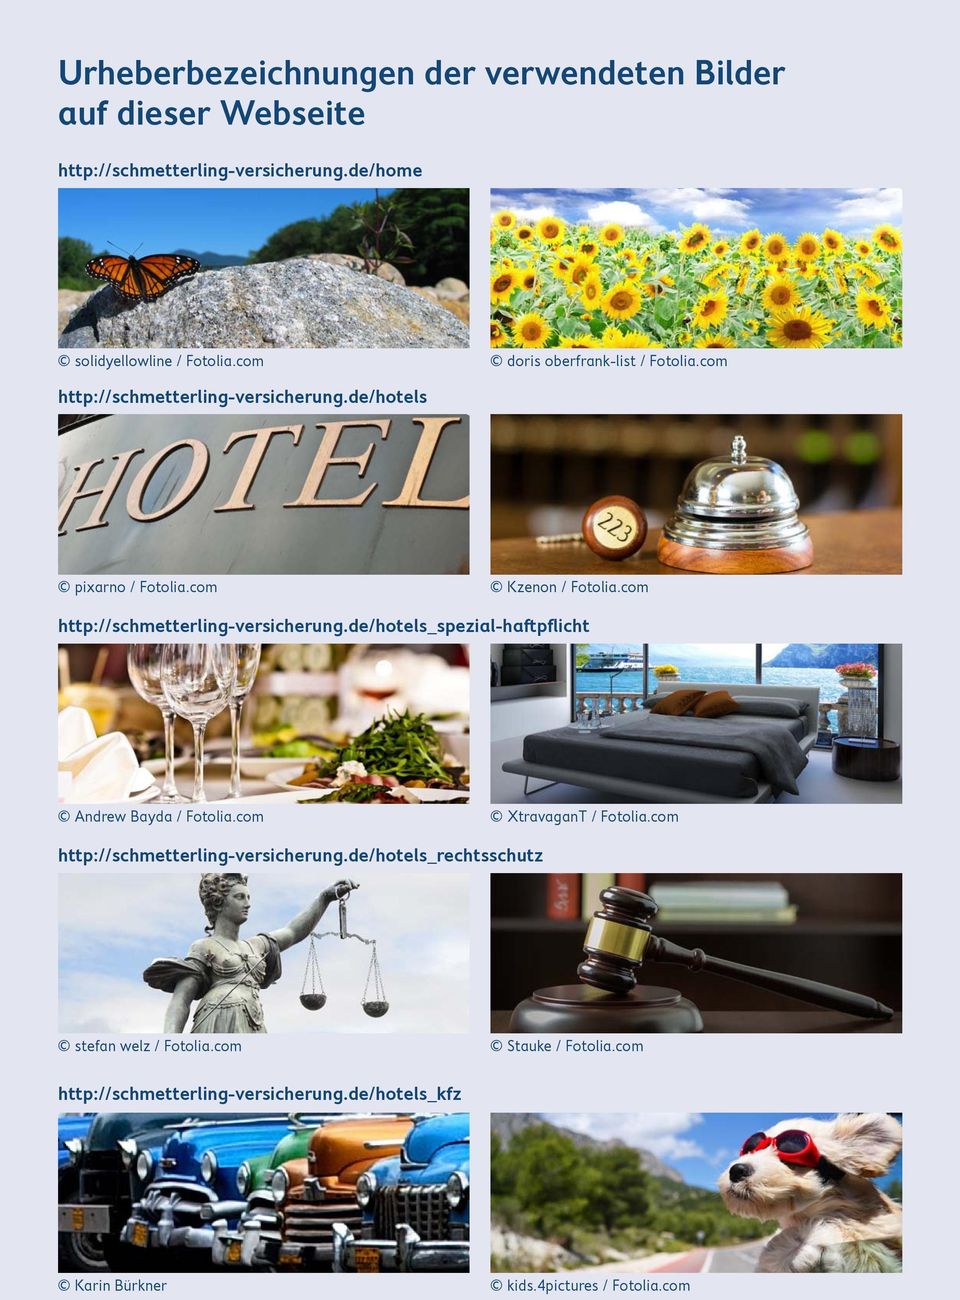 de/hotels pixarno / Fotolia.com Kzenon / Fotolia.com http://schmetterling-versicherung.